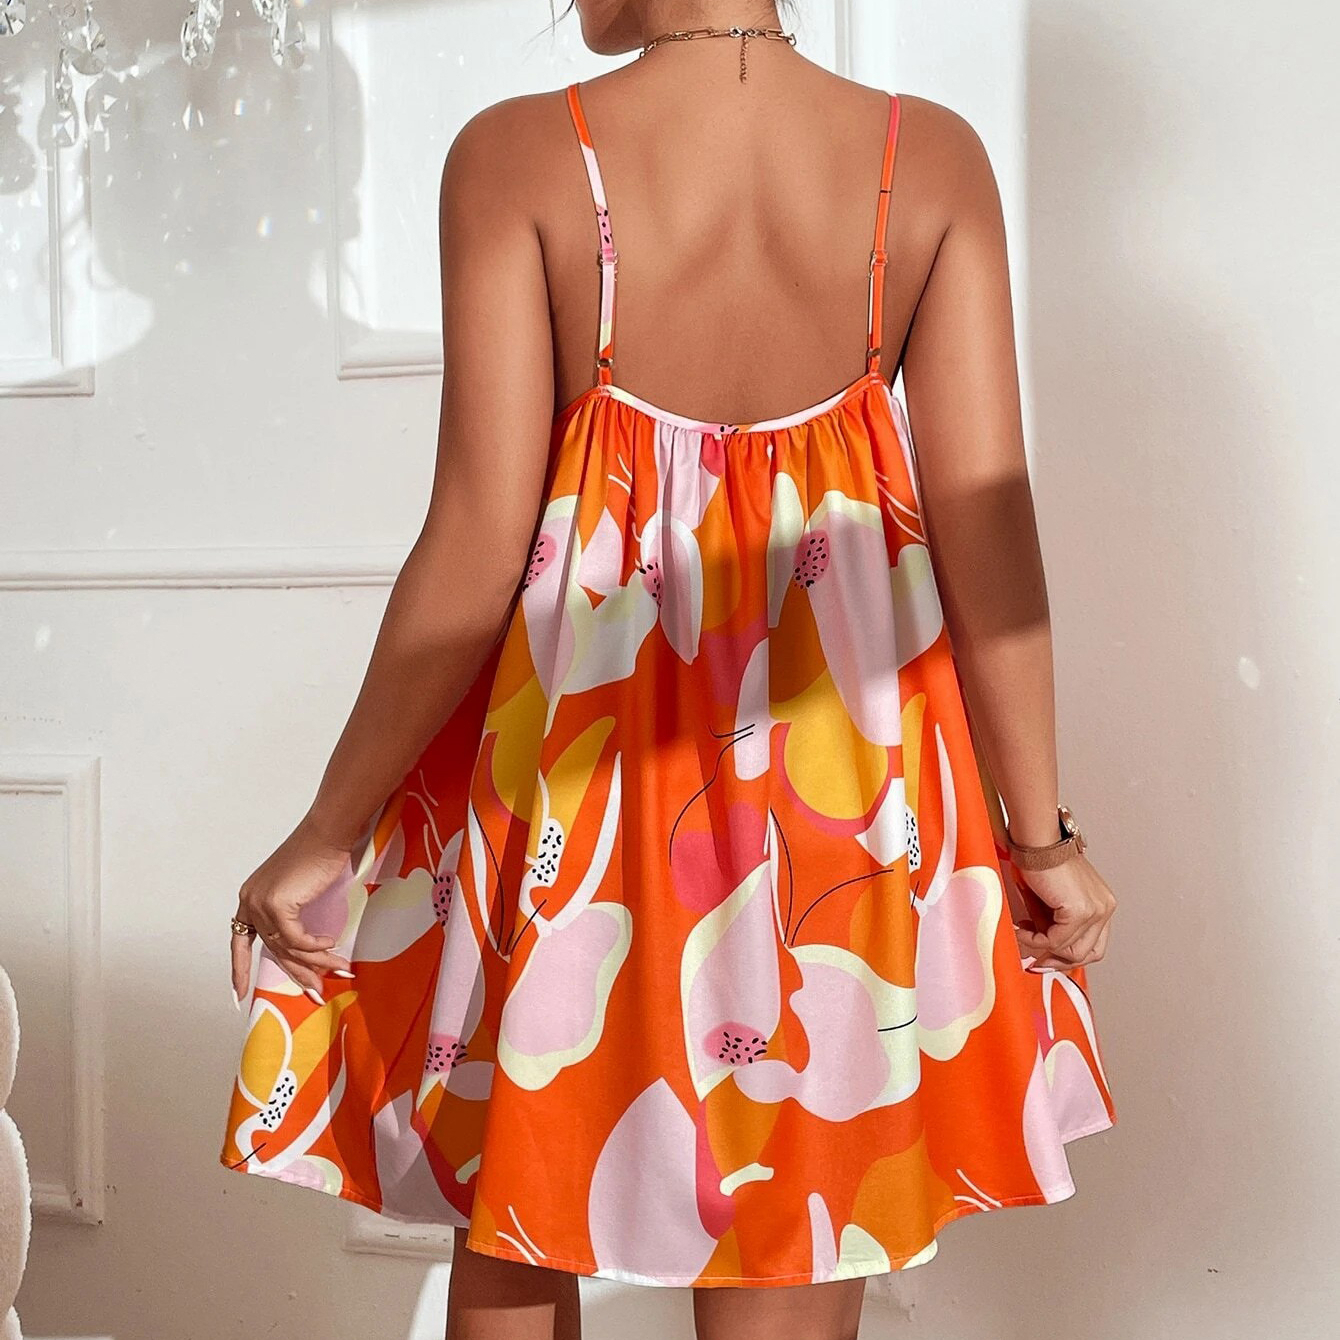 Allover Print Cami Dress - Orange, Small(4)